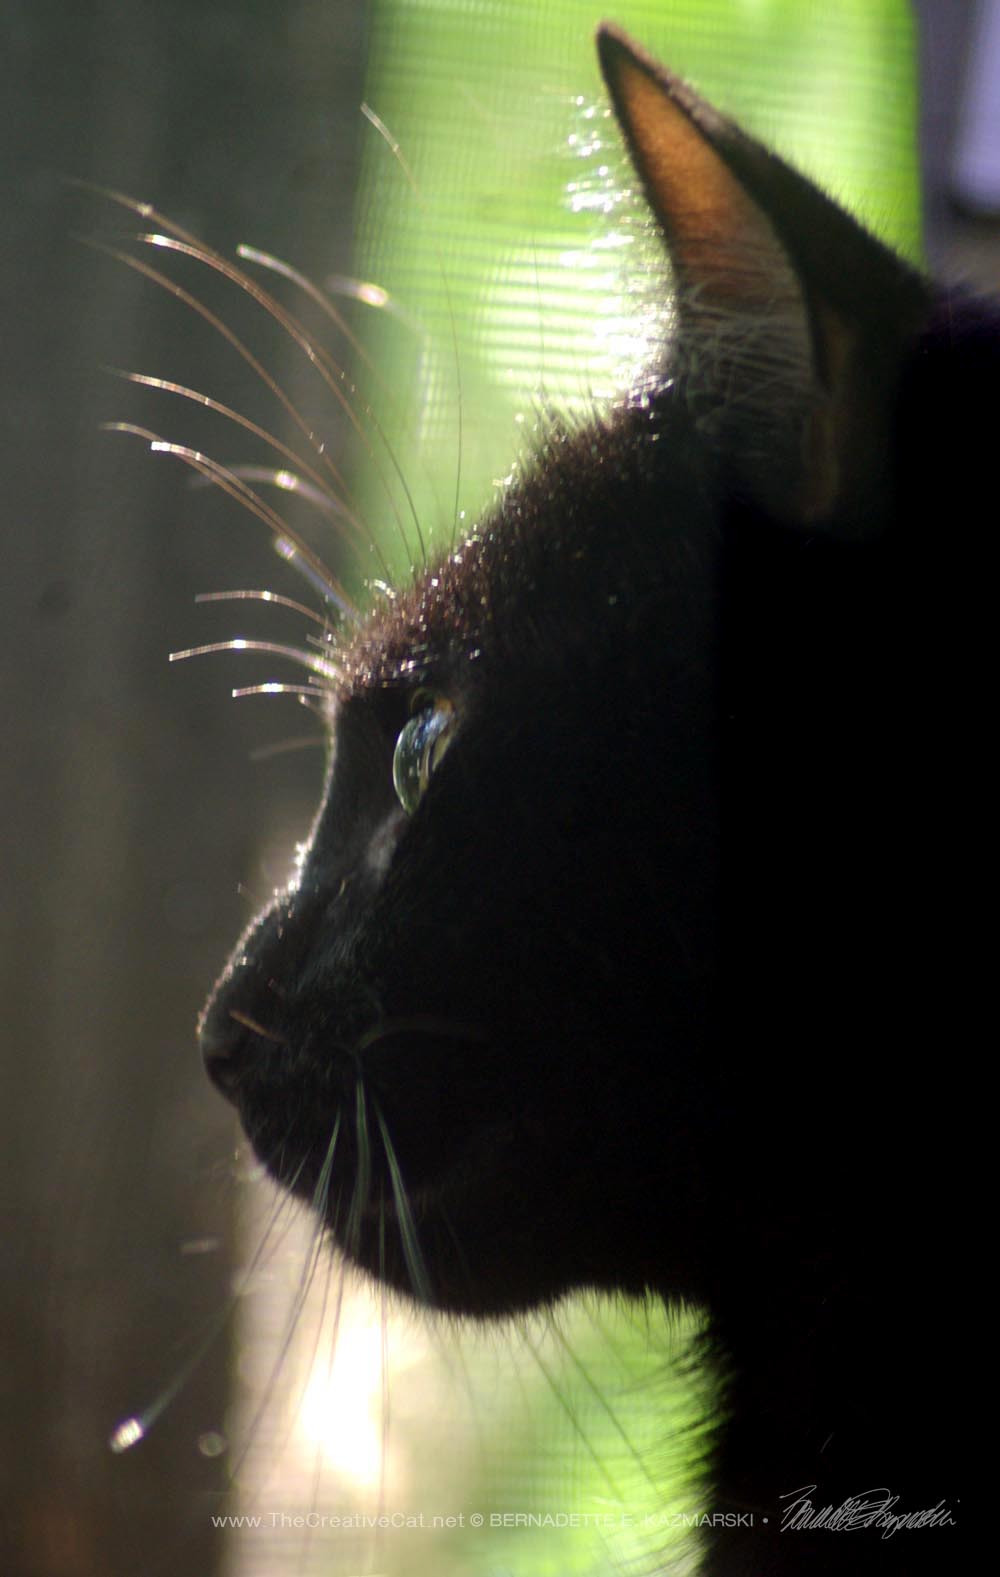 black cat profile